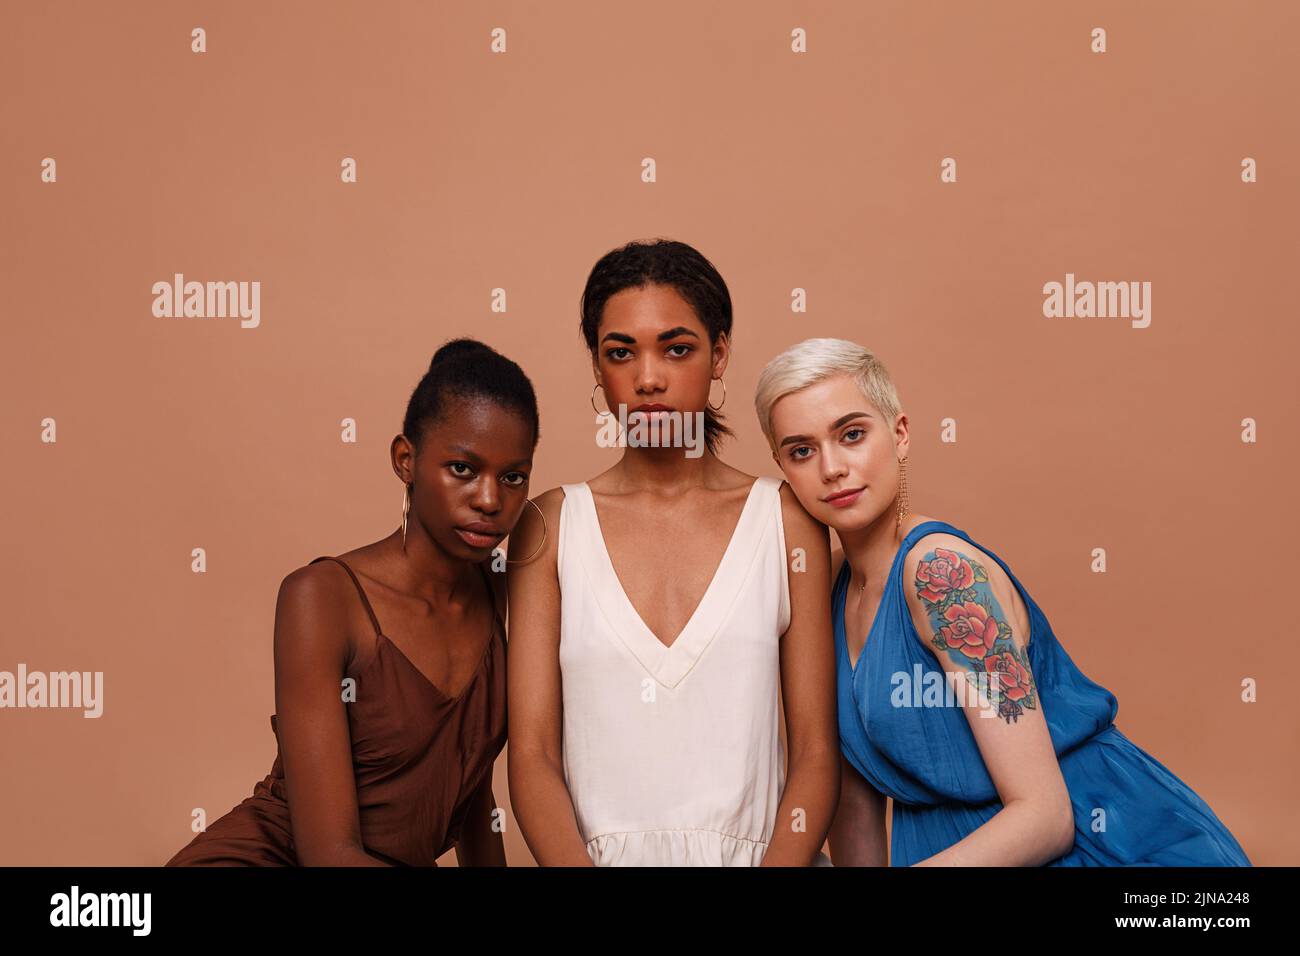 Drei schöne Frauen mit unterschiedlichen Hautfarben betrachten die Kamera. Junge Frauen in Kleidern sitzen auf braunem Hintergrund. Stockfoto